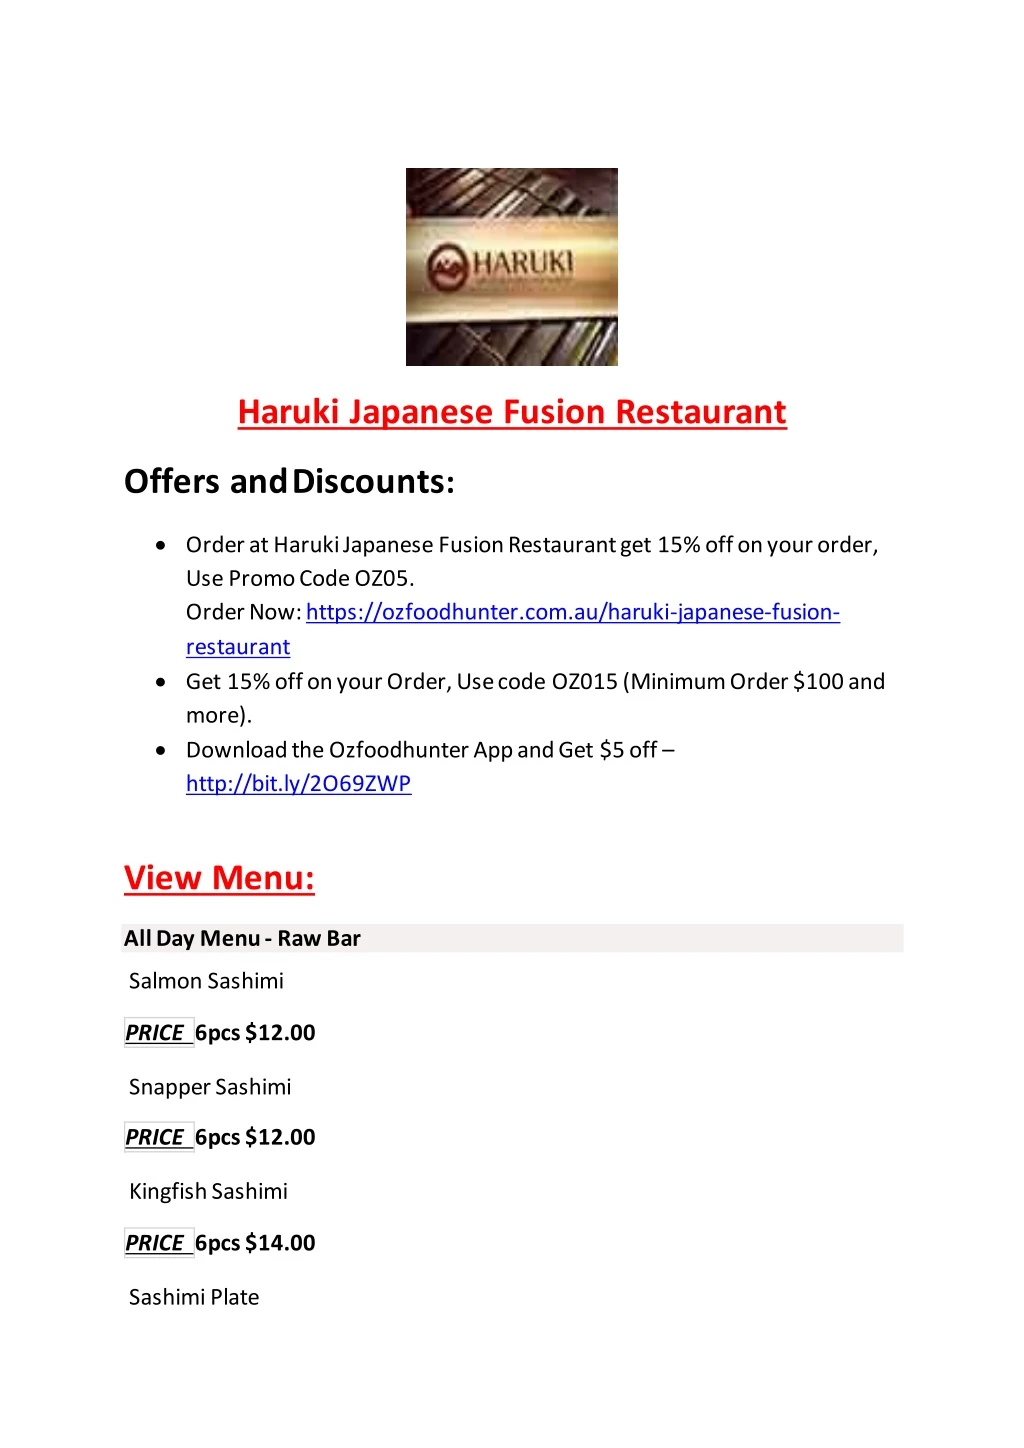 haruki japanese fusion restaurant